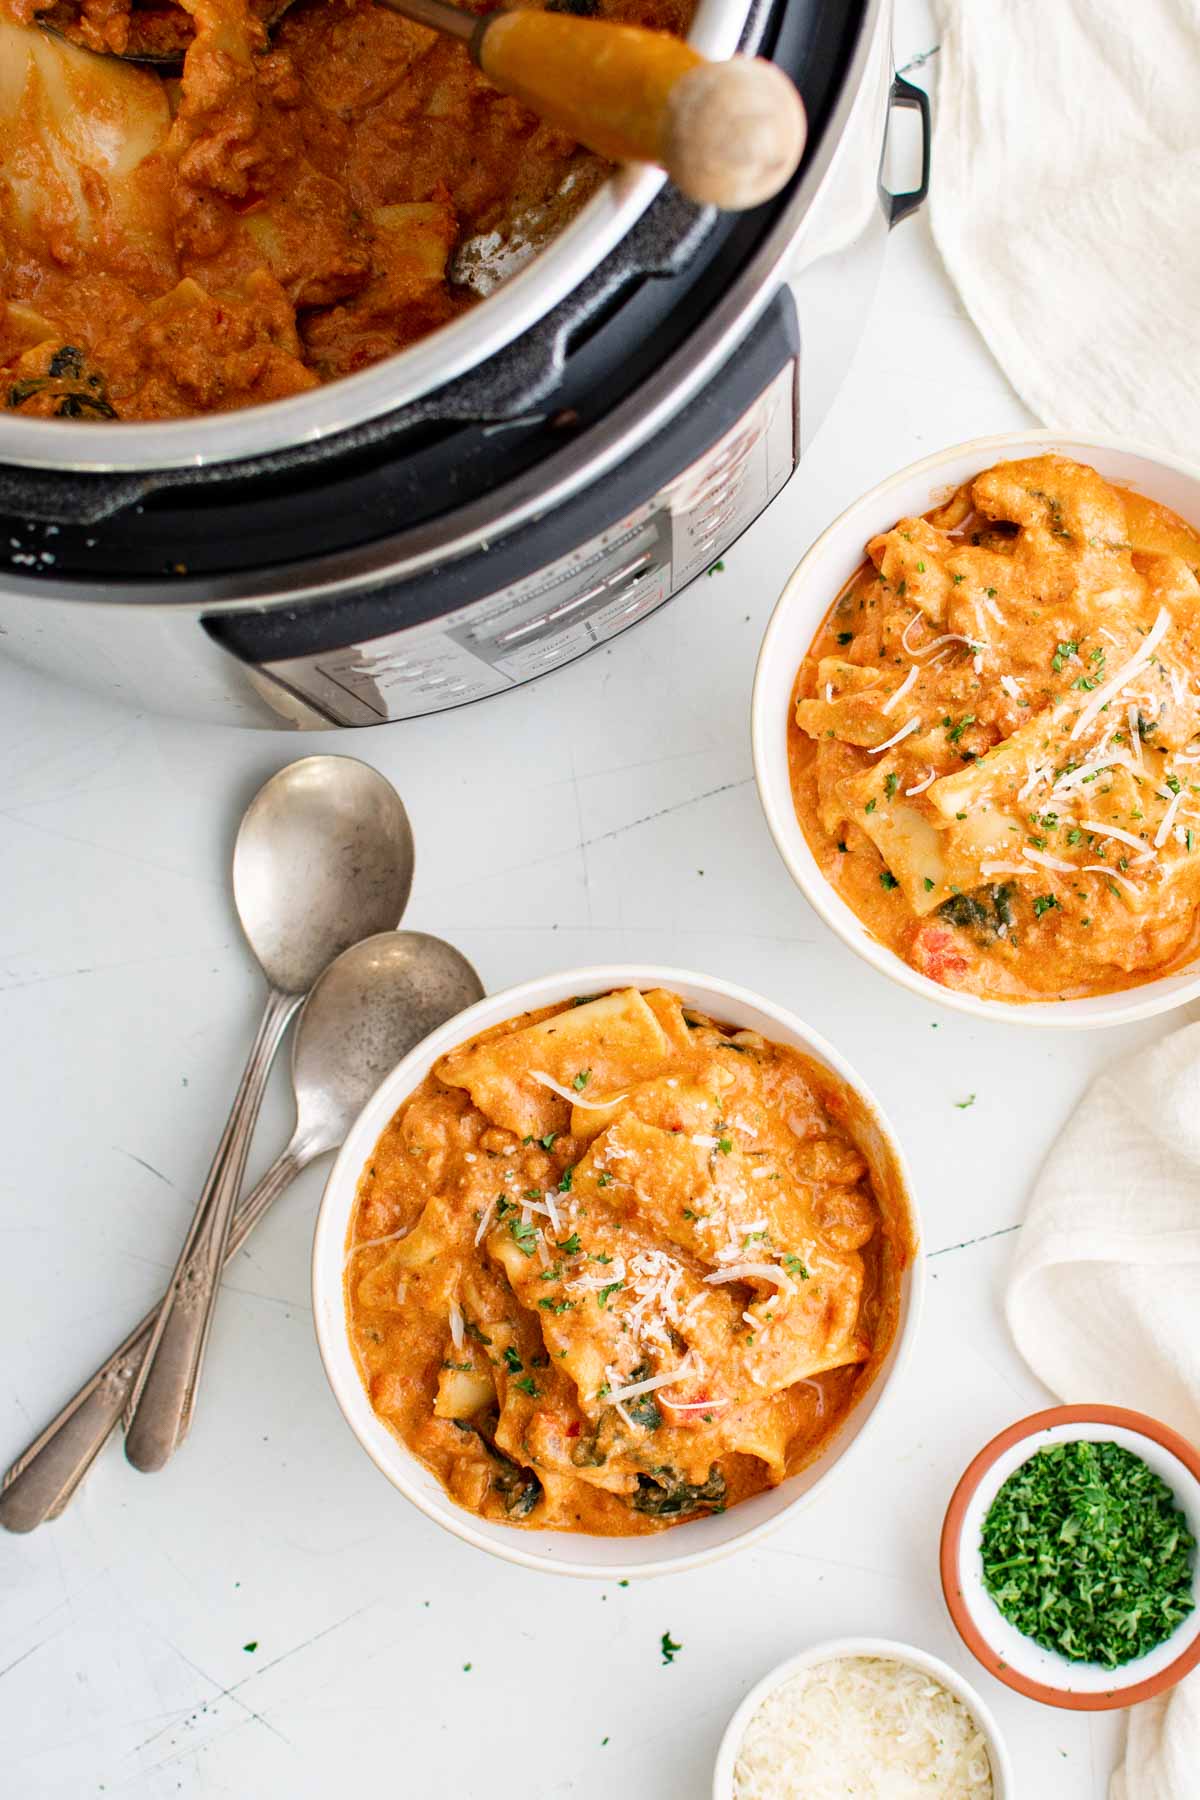 Instant Pot Lasagna Soup